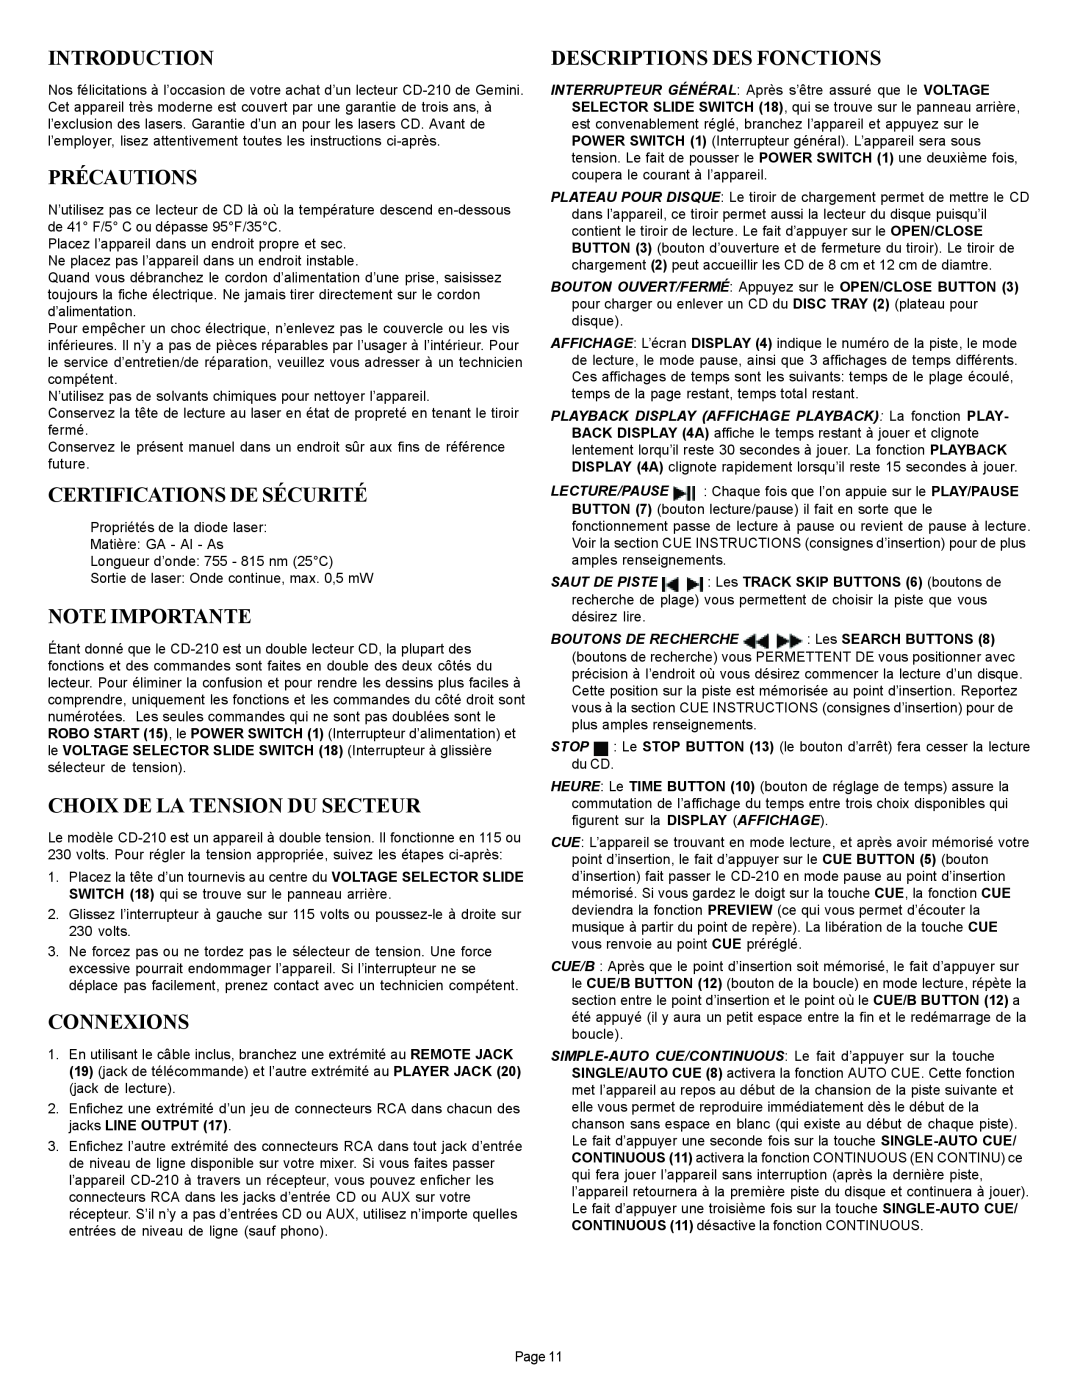 Gemini CD-210 manual Précautions, Certifications De Sécurité, Note Importante, Choix De La Tension Du Secteur, Connexions 